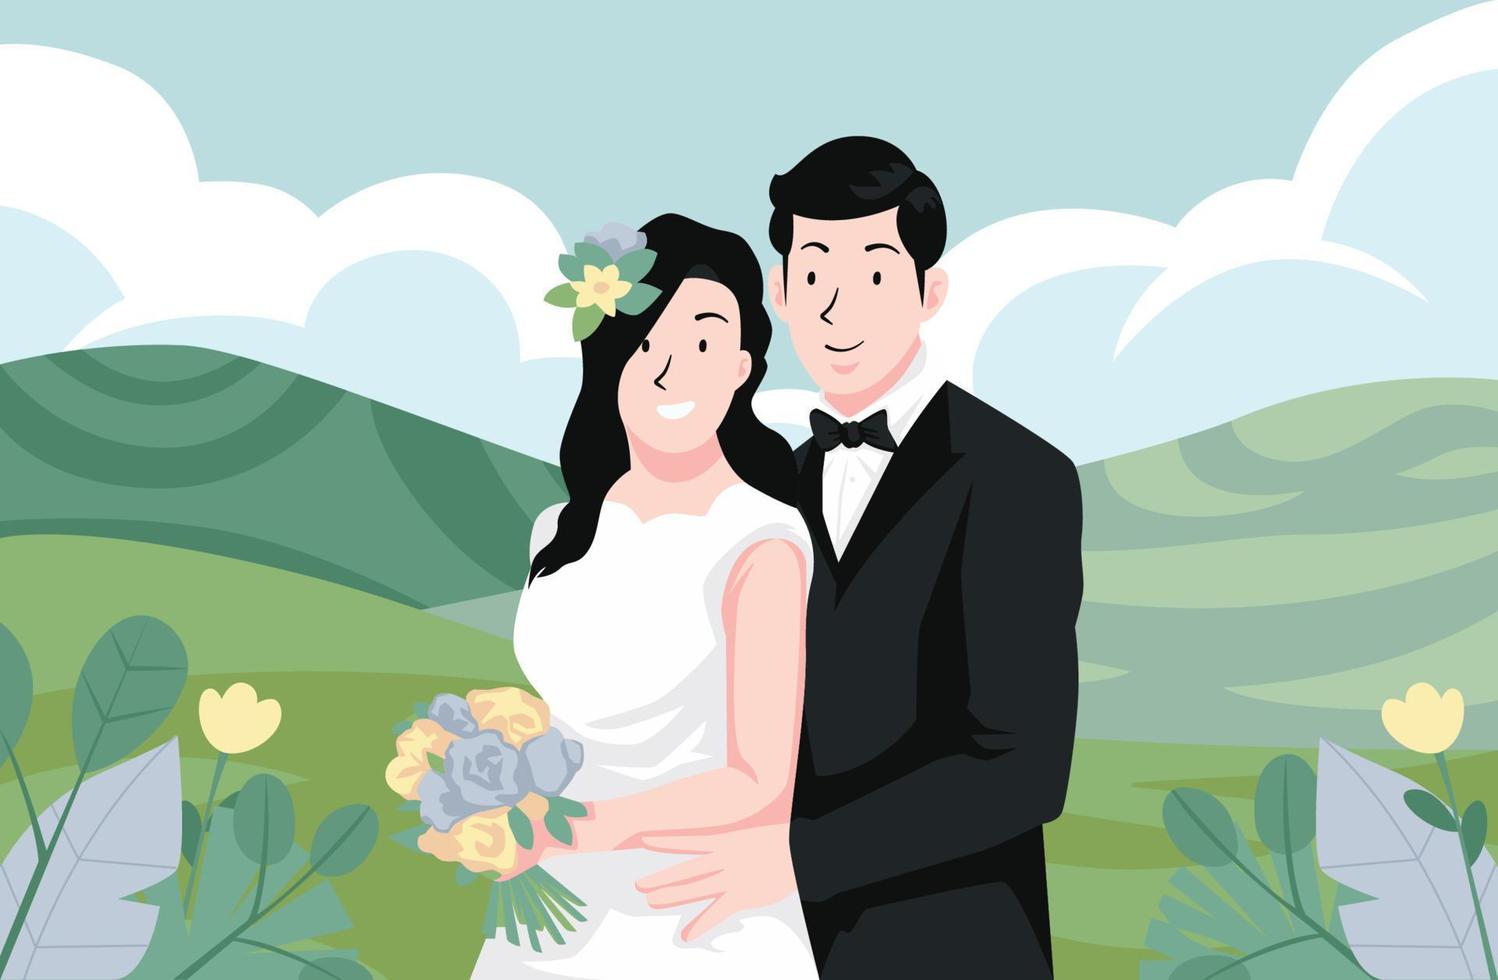 färgglad bröllopsdag bruden och brudgummen par äktenskapsceremoni med kulle landskap och landskap vektorillustration vektor